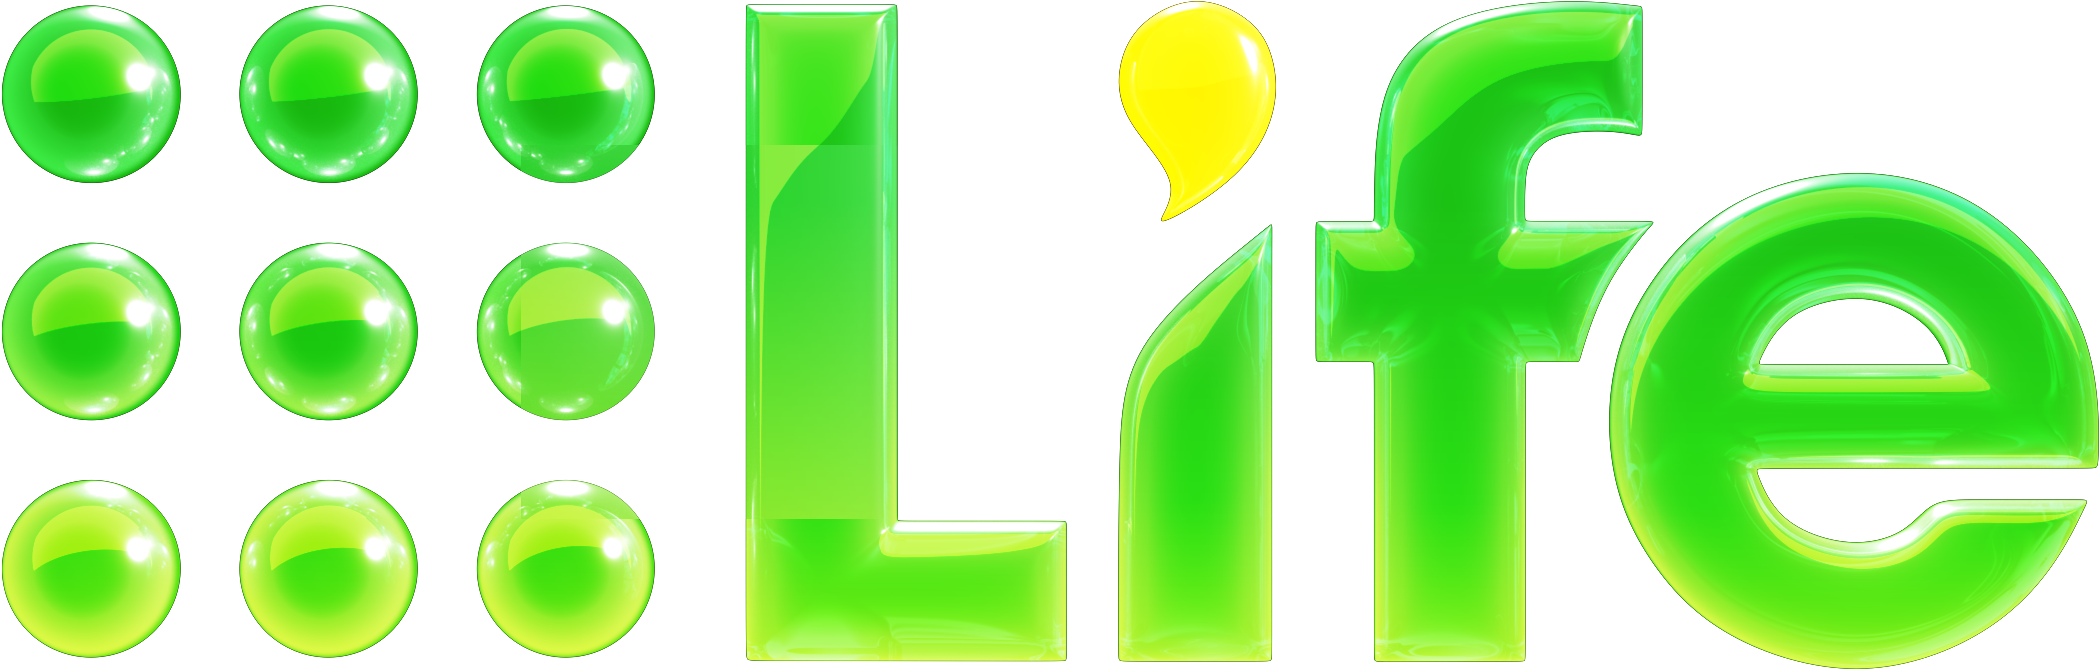 9life_3D_logo